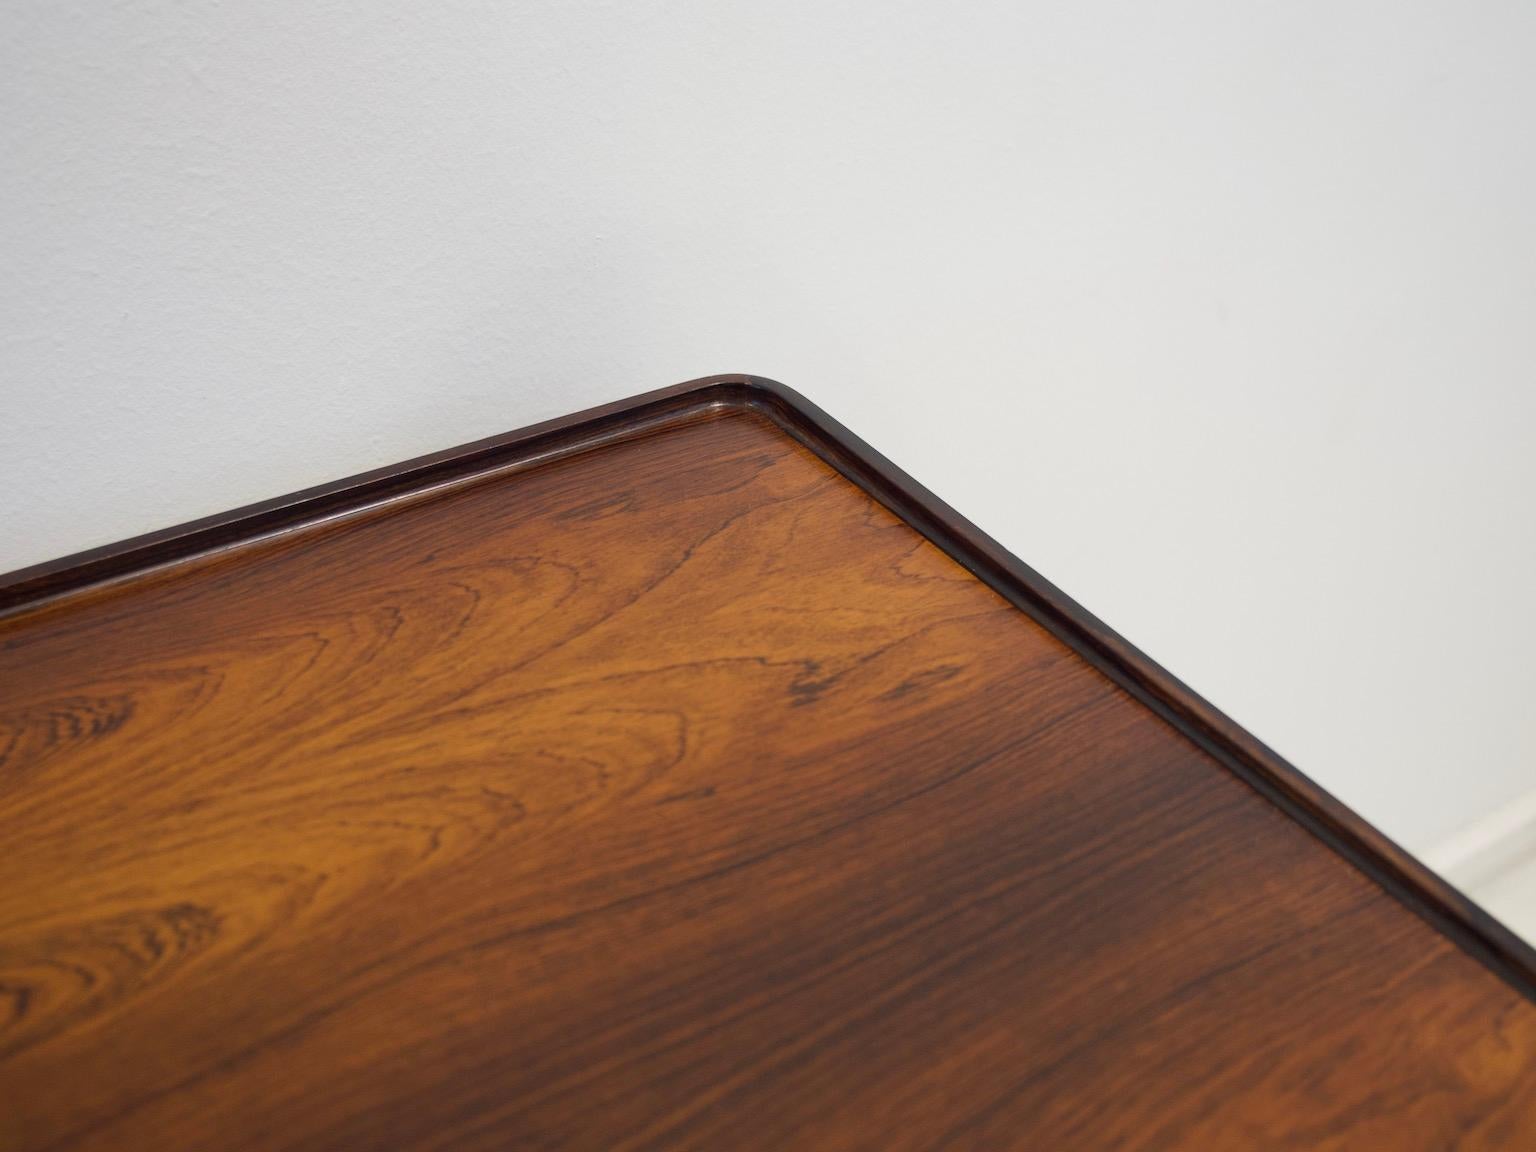 Minimalist Wooden Desk with Raised Edge by Erik Riisager Hansen 5